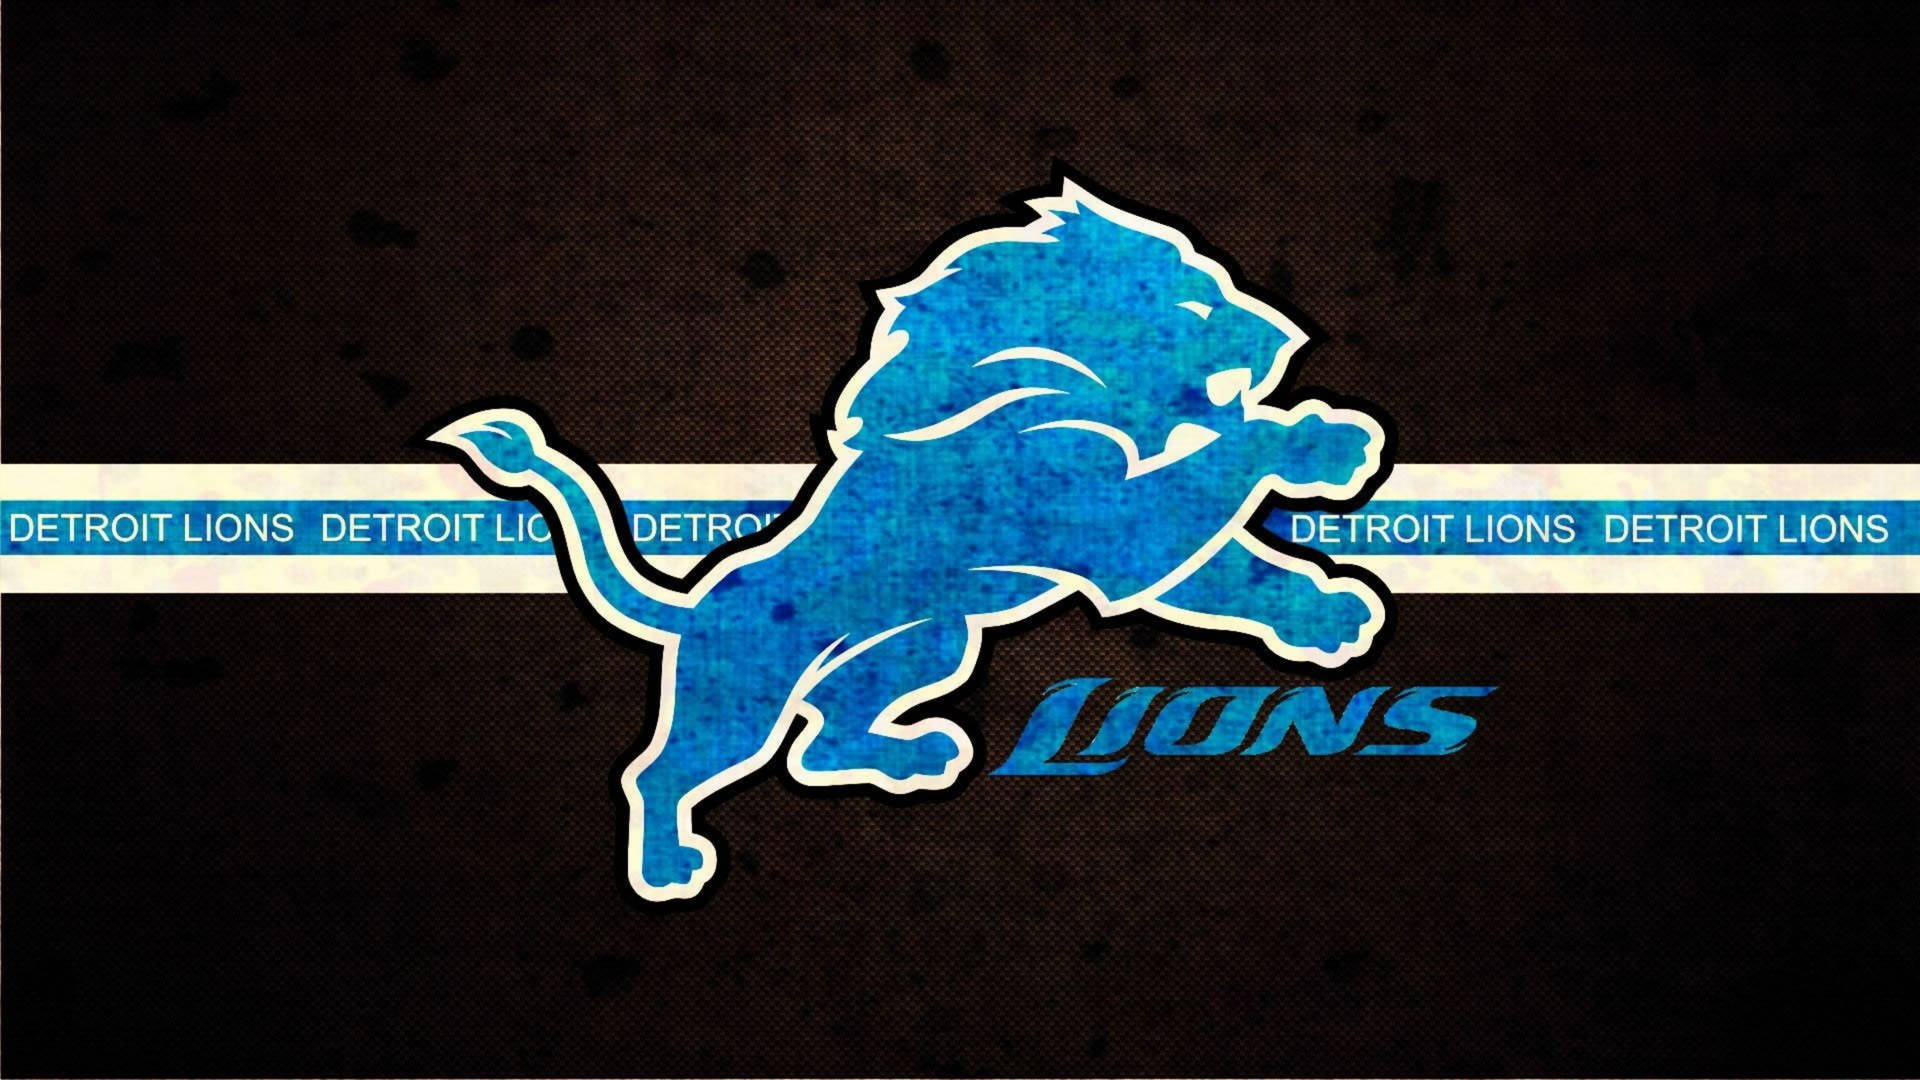 Detroit Lions Background Photos